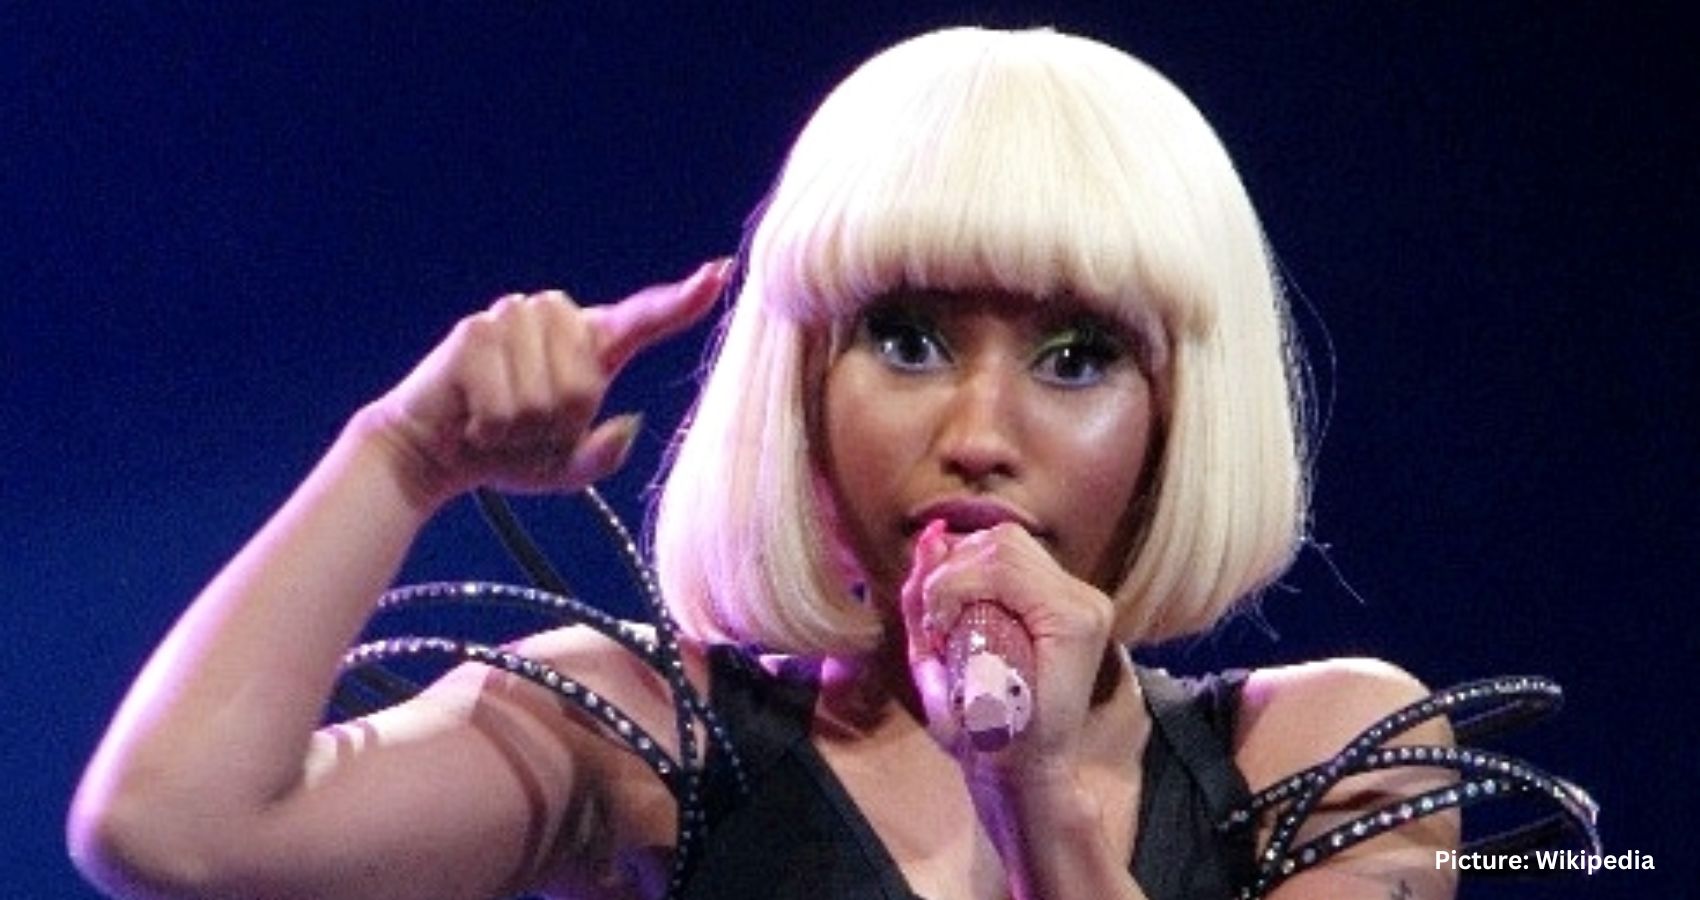 Nicki Minaj Apologizes for Postponed Manchester Concert After Dutch Drug Detention